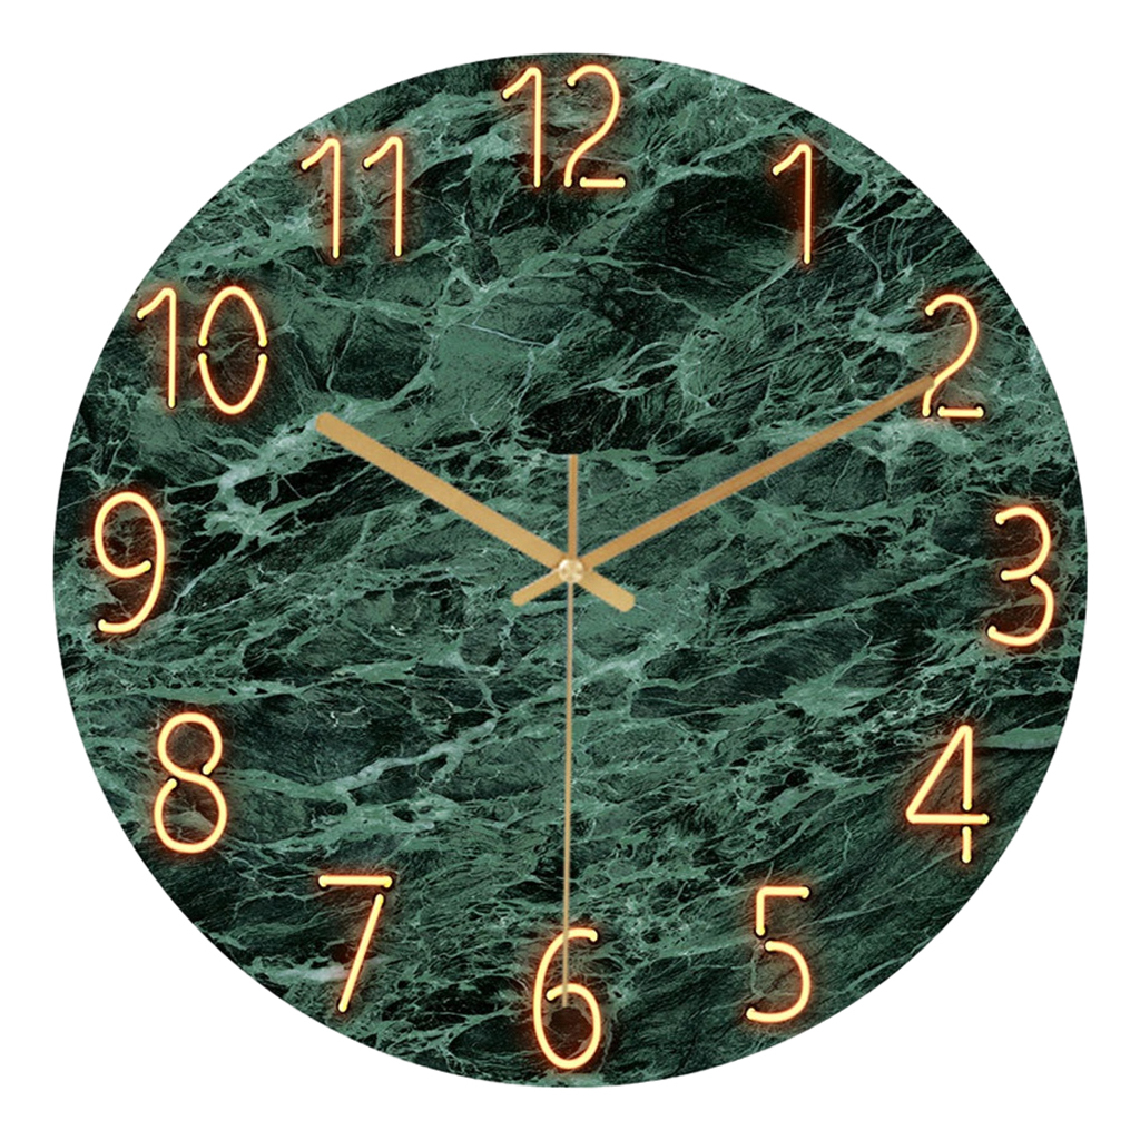 marque generique - Horloge Murale Suspendue Moderne Horloges En Verre De Quartz De Qualité Silencieuse Sans Coutil D - Horloges, pendules